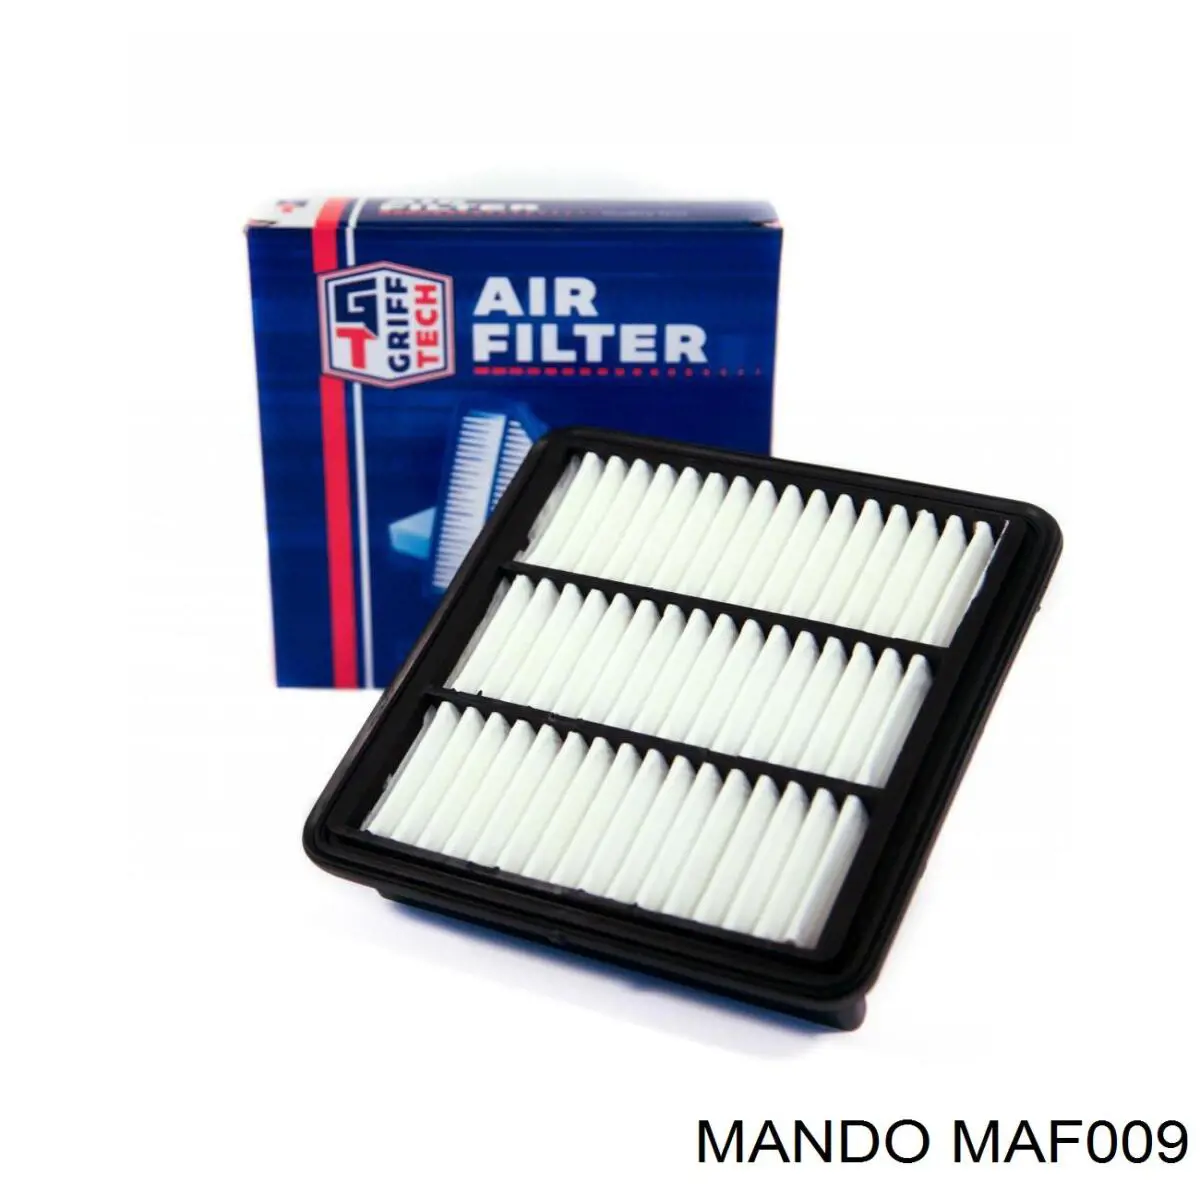 MAF009 Mando воздушный фильтр